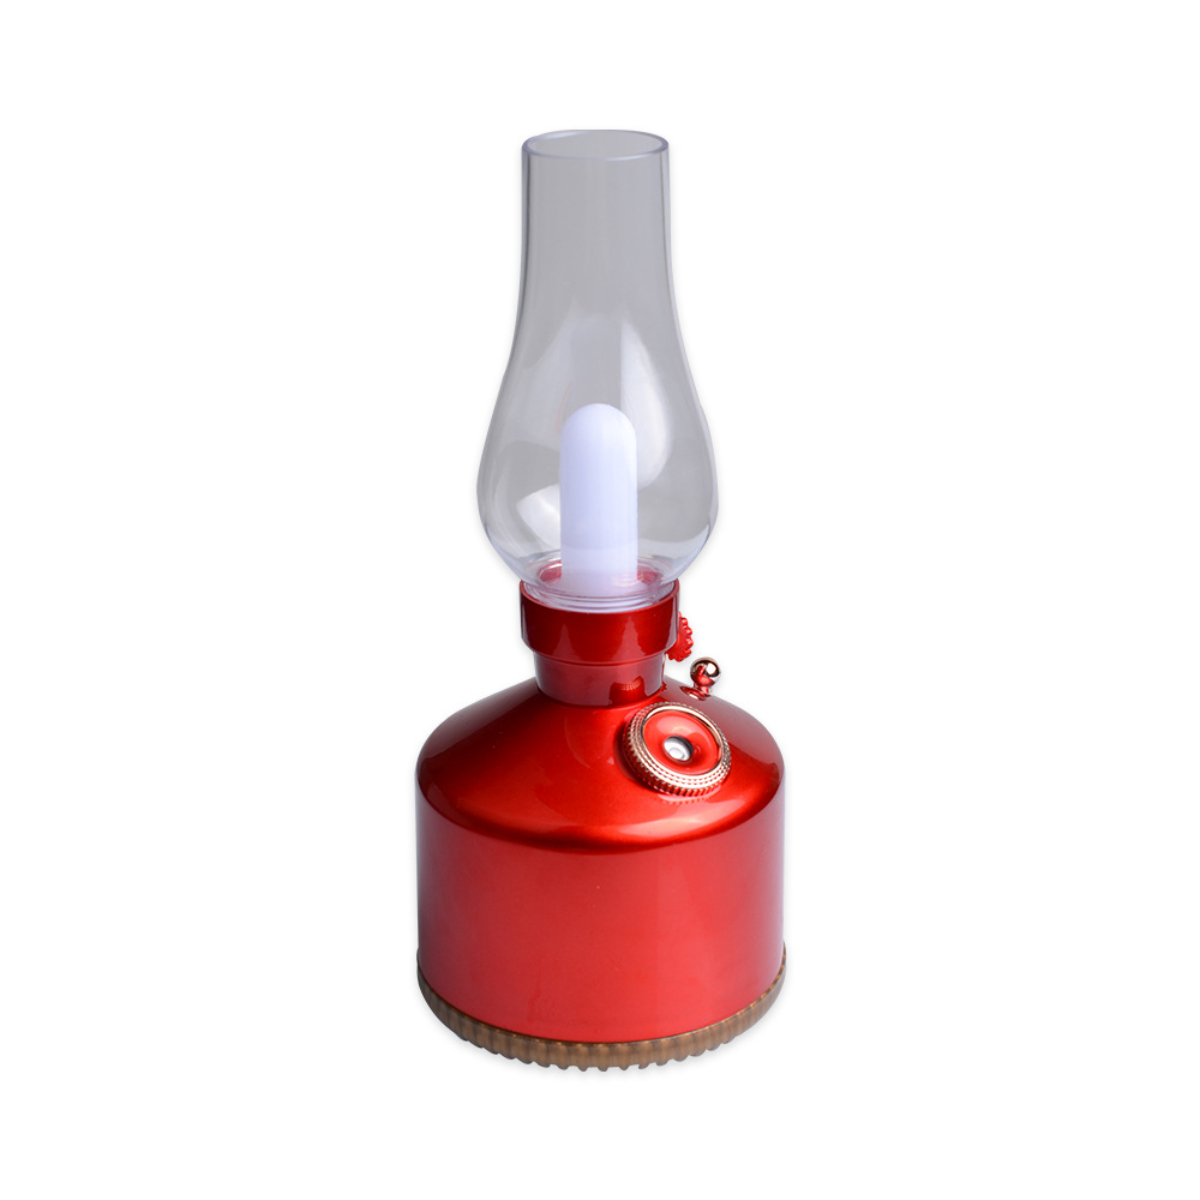 LACAMAX Mini-Handluftbefeuchter, Ultraschall-Luftreinigung, 2 Raumgröße: Watt, Vernebelung Geschwindigkeiten, Farblicht, Rot Luftbefeuchter 10 m²) (1,5